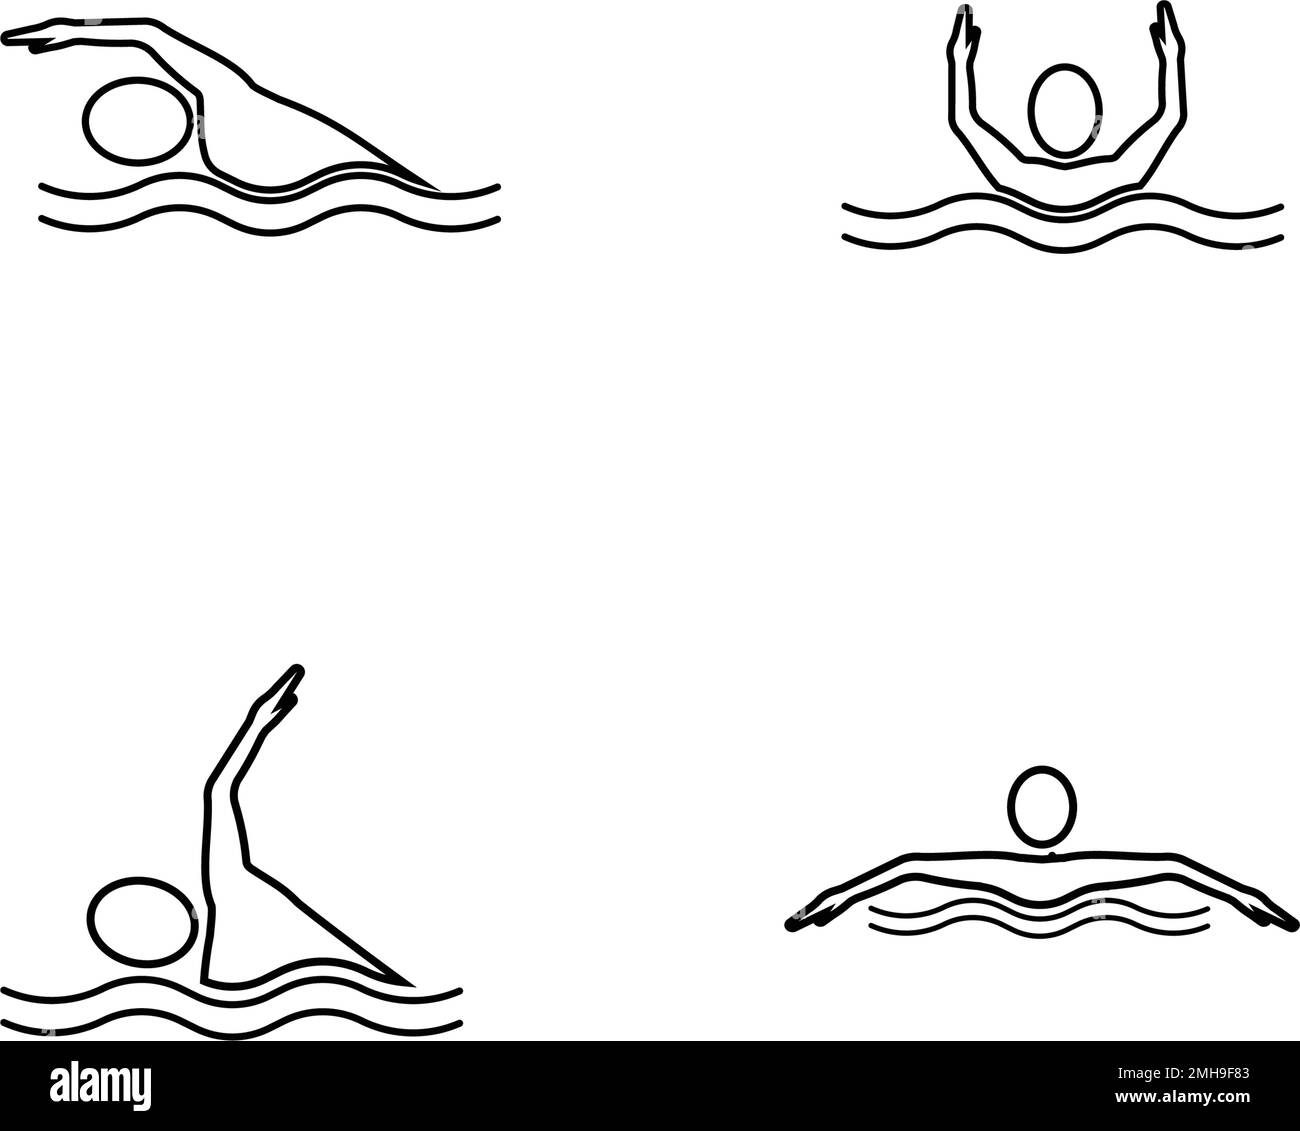 Vettore di ilustration del logo dello sport di nuoto Illustrazione Vettoriale